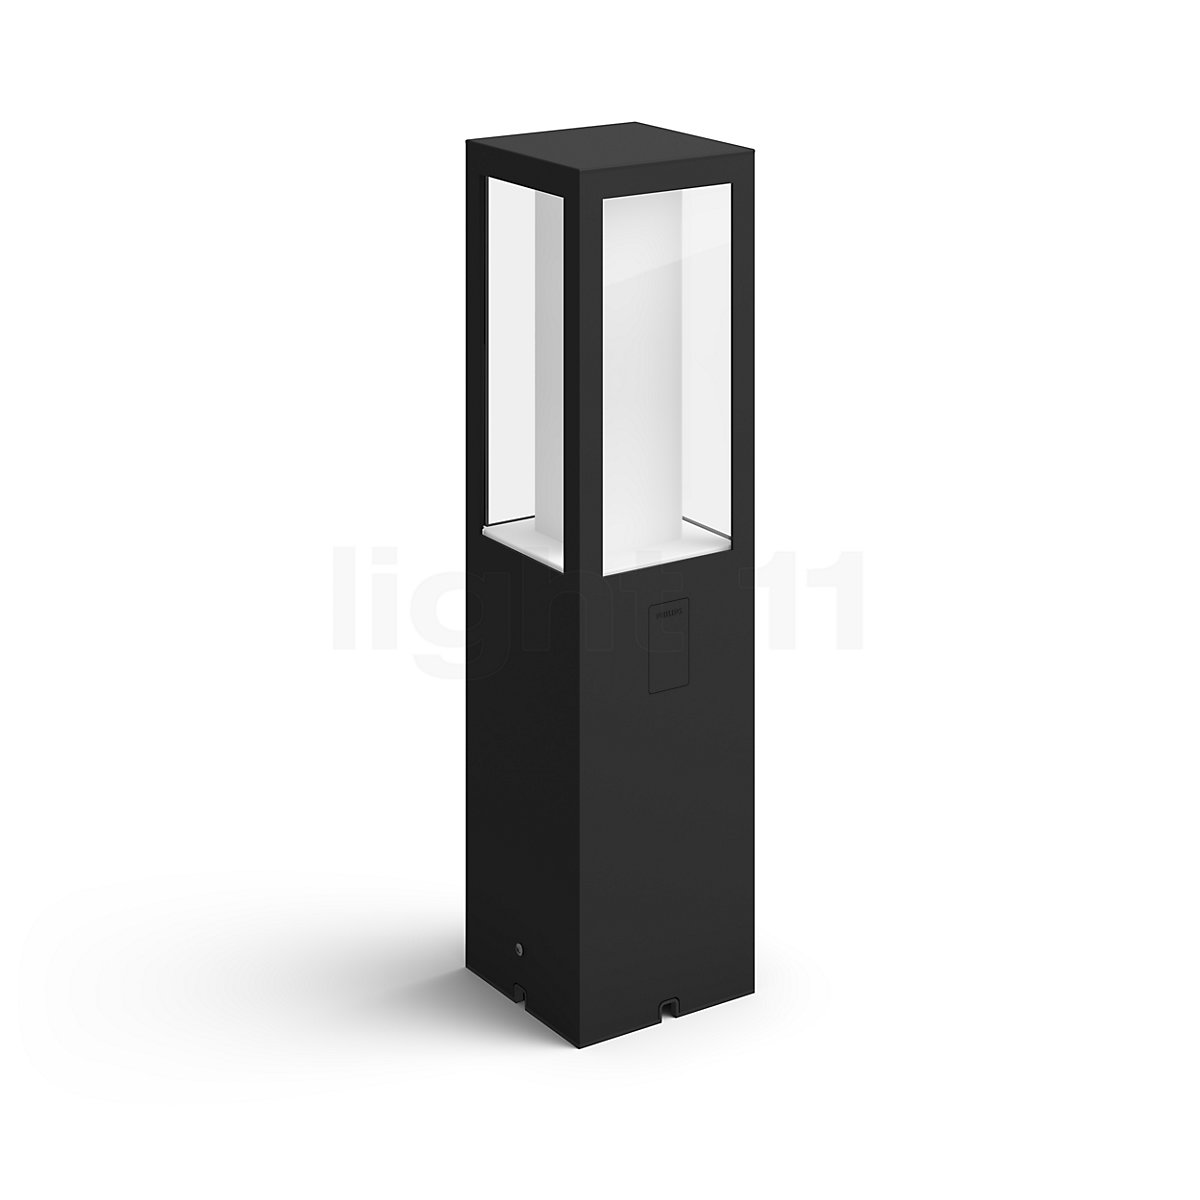 Torrent Geaccepteerd Minimaal Philips Hue White and Color Ambiance Impress Buitenlamp op sokkel LED  uitbreiding